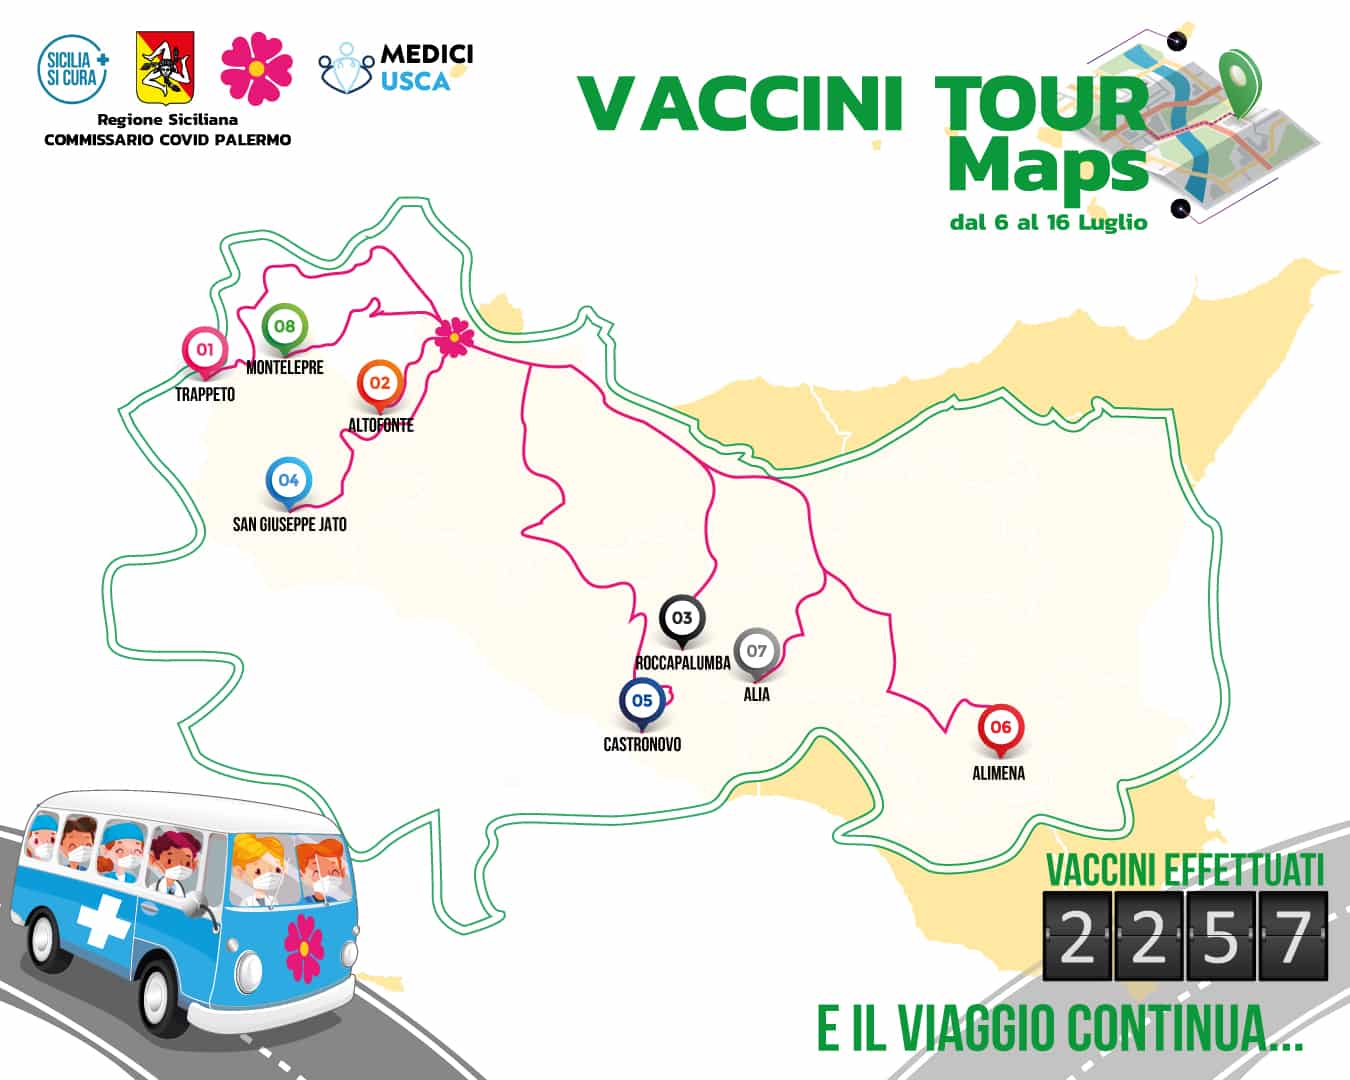 #VacciniTour, medici in viaggio per la provincia di Palermo per vaccinare: più di 2mila inoculazioni in 10 giorni